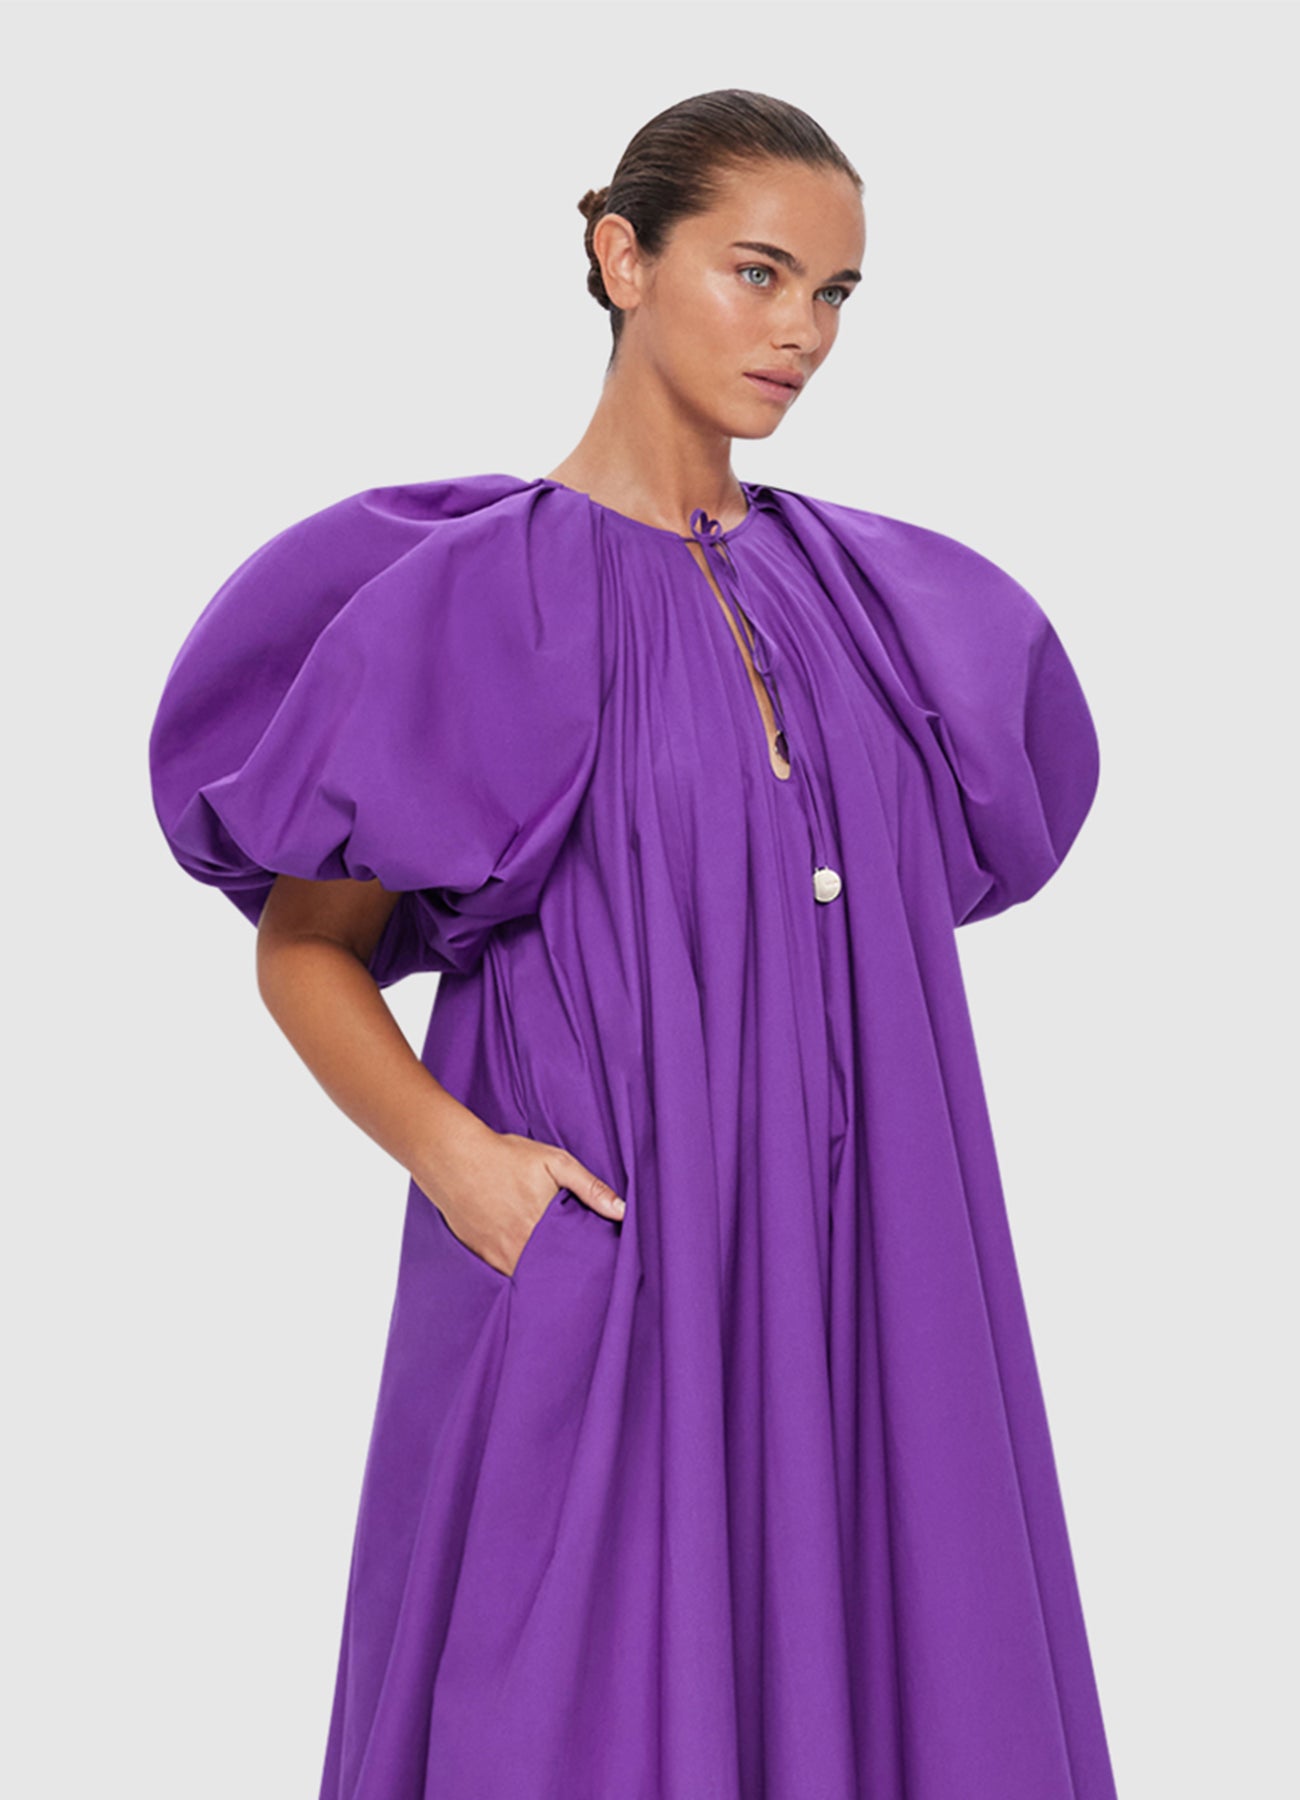 Noelle Bishop Sleeve Dress - Eminence | LEO LIN® Official Website